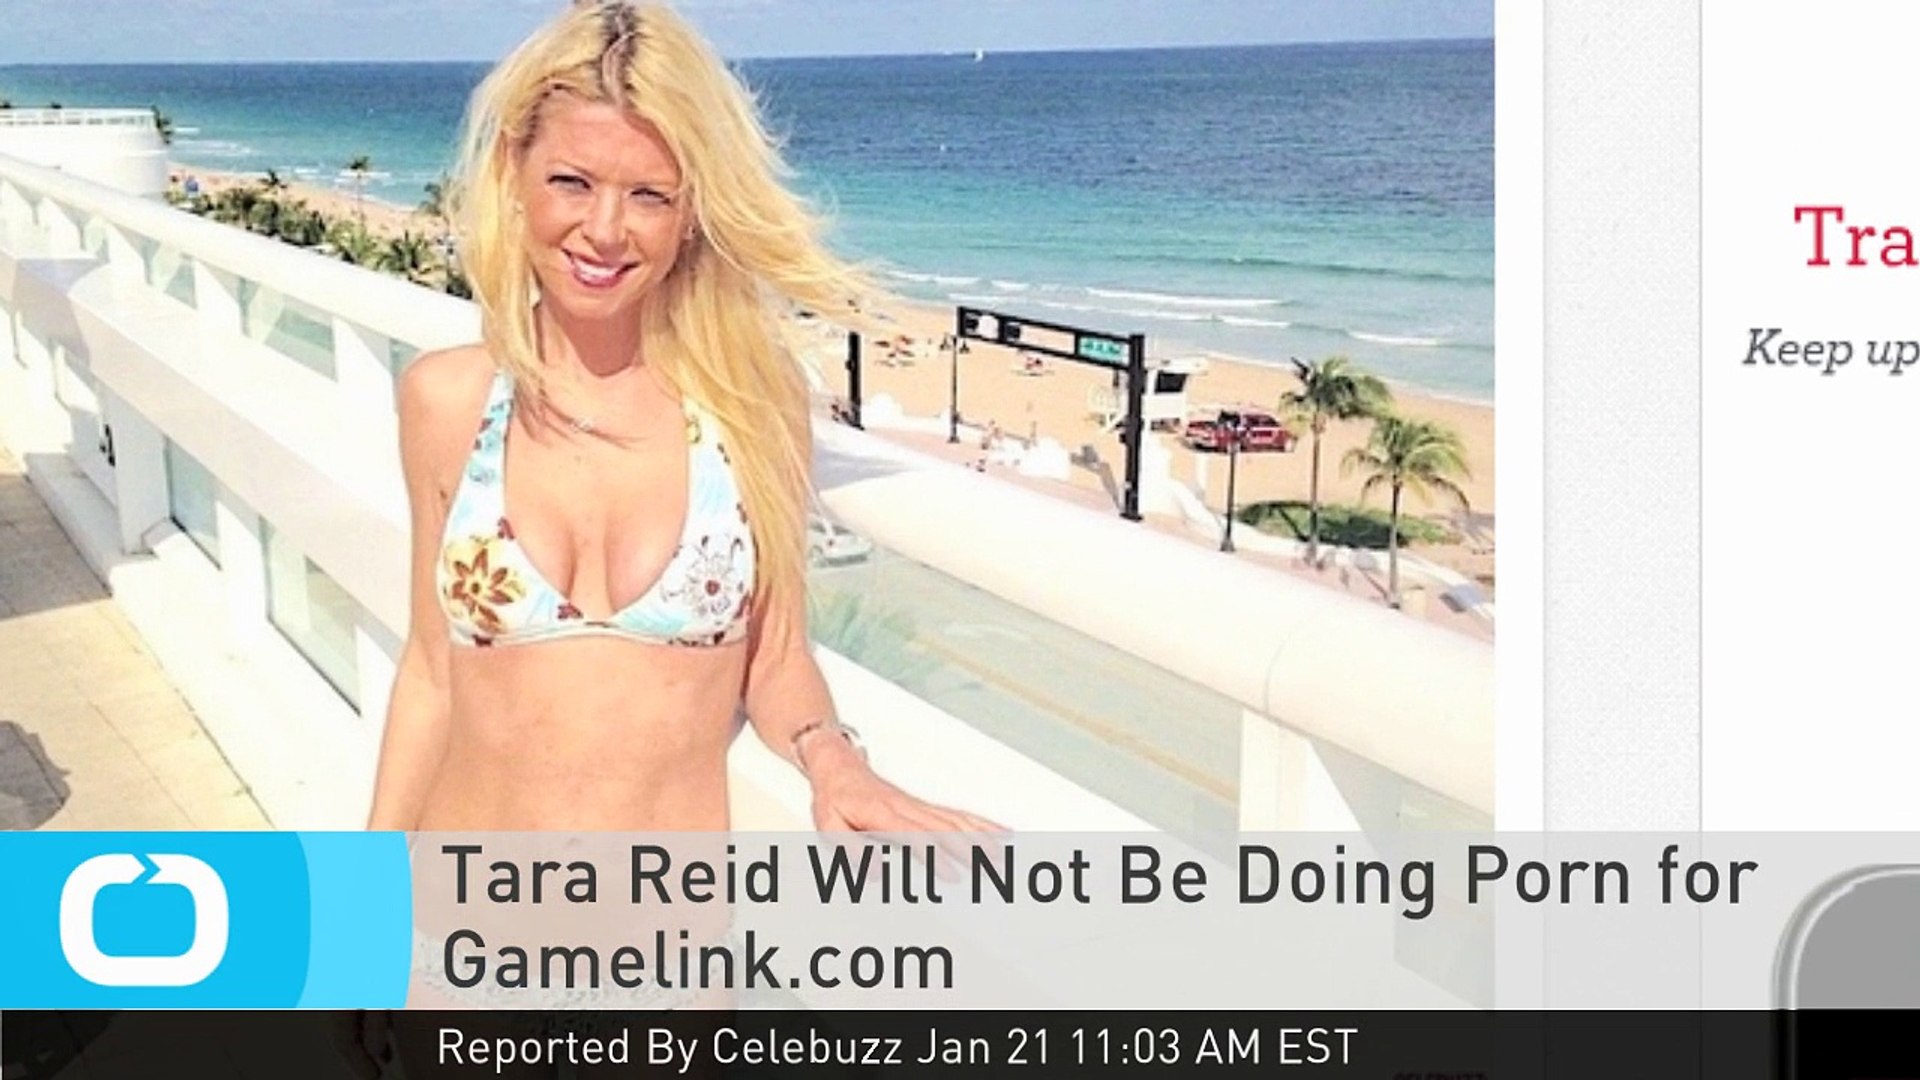 Tara Reid Will Not Be Doing Porn for Gamelink.com